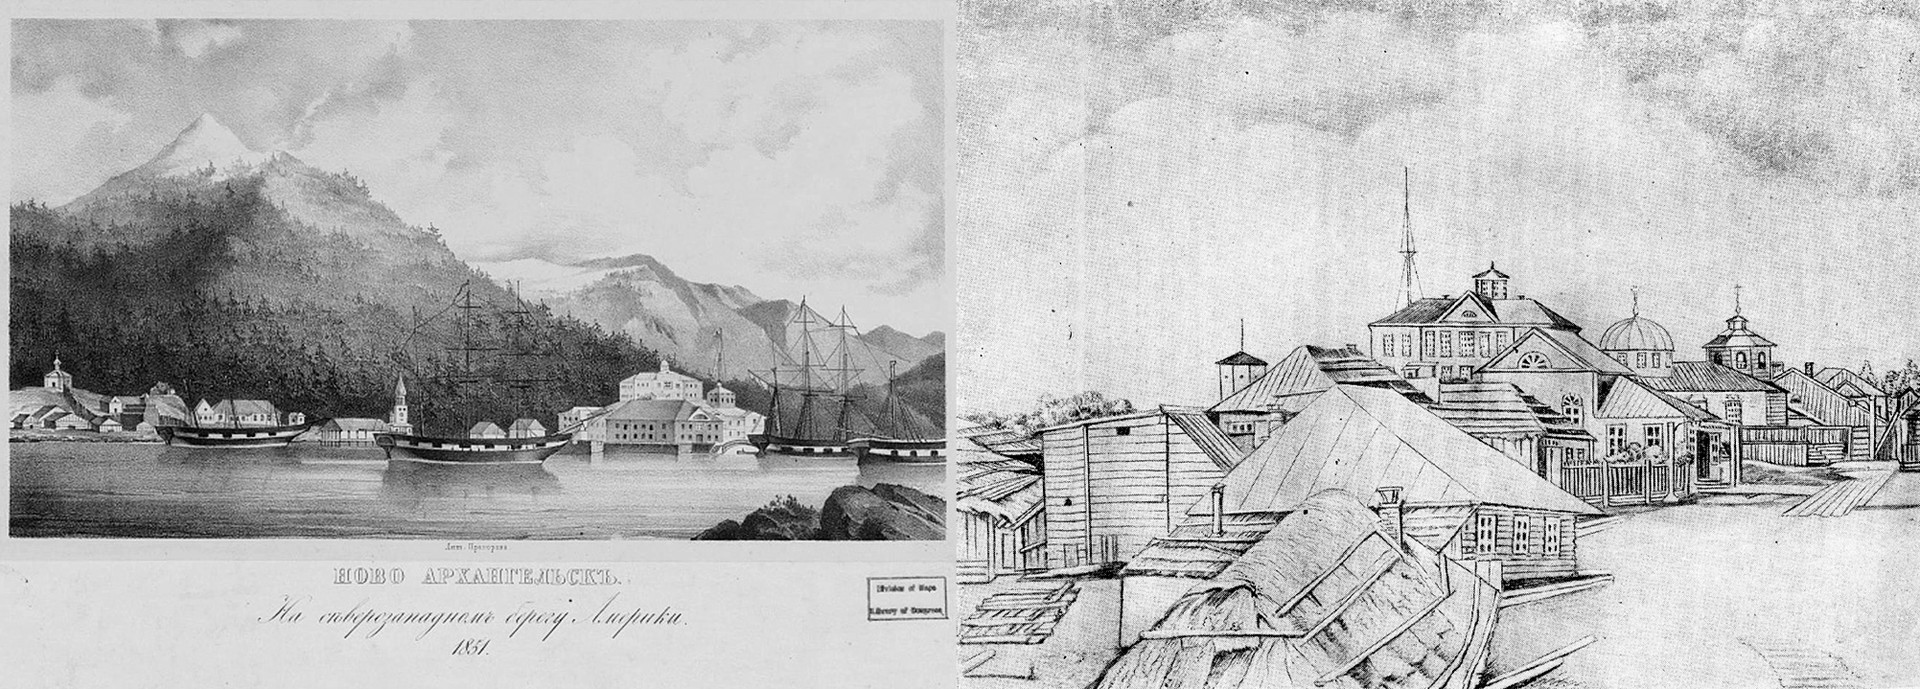 Neu-Archangelsk, 1851